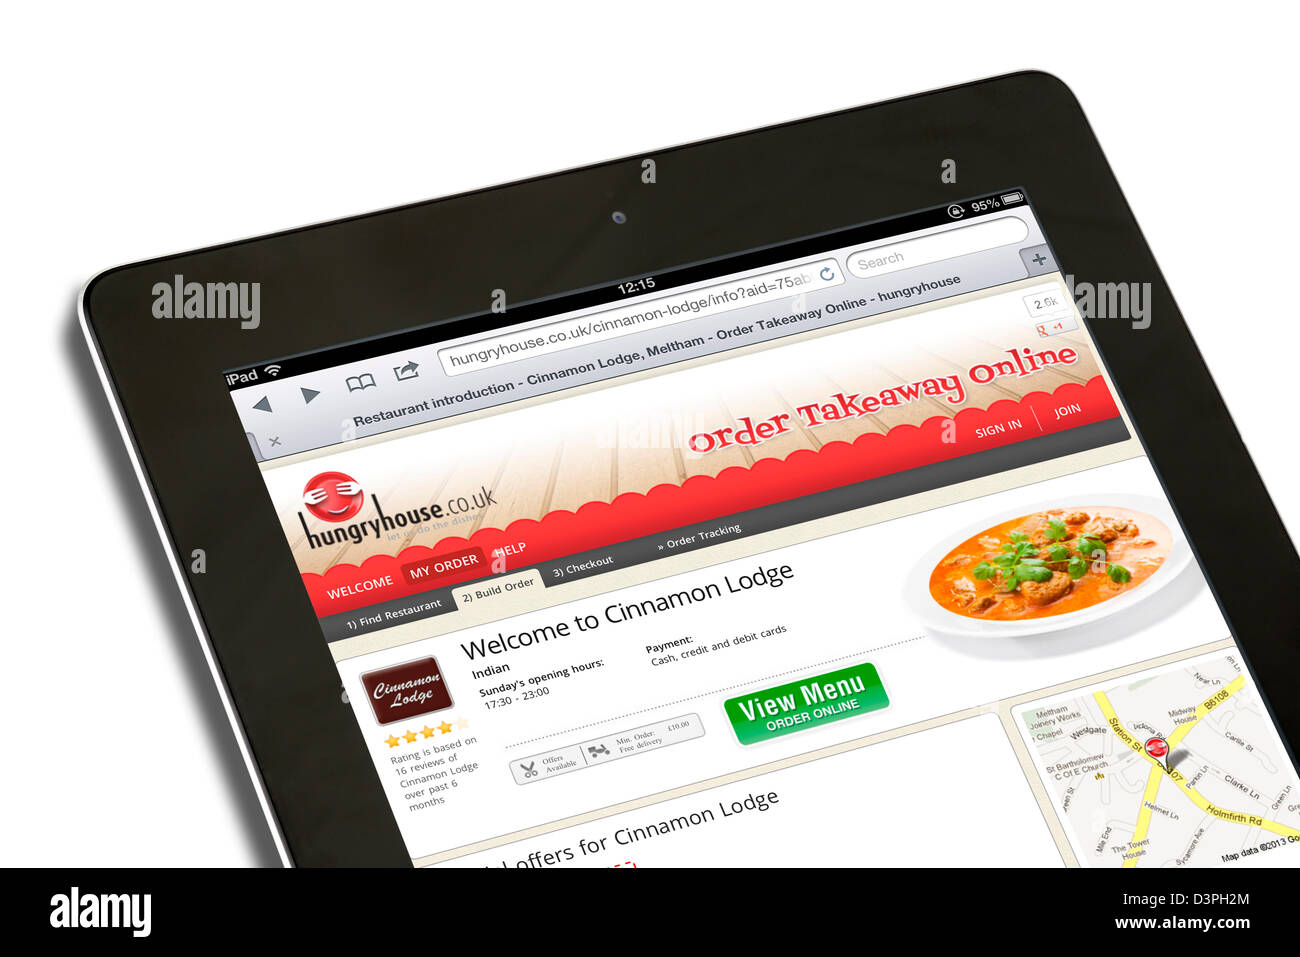 La hungryhouse.co.uk sitio web de pedidos de comida para llevar vistos en un iPad Foto de stock